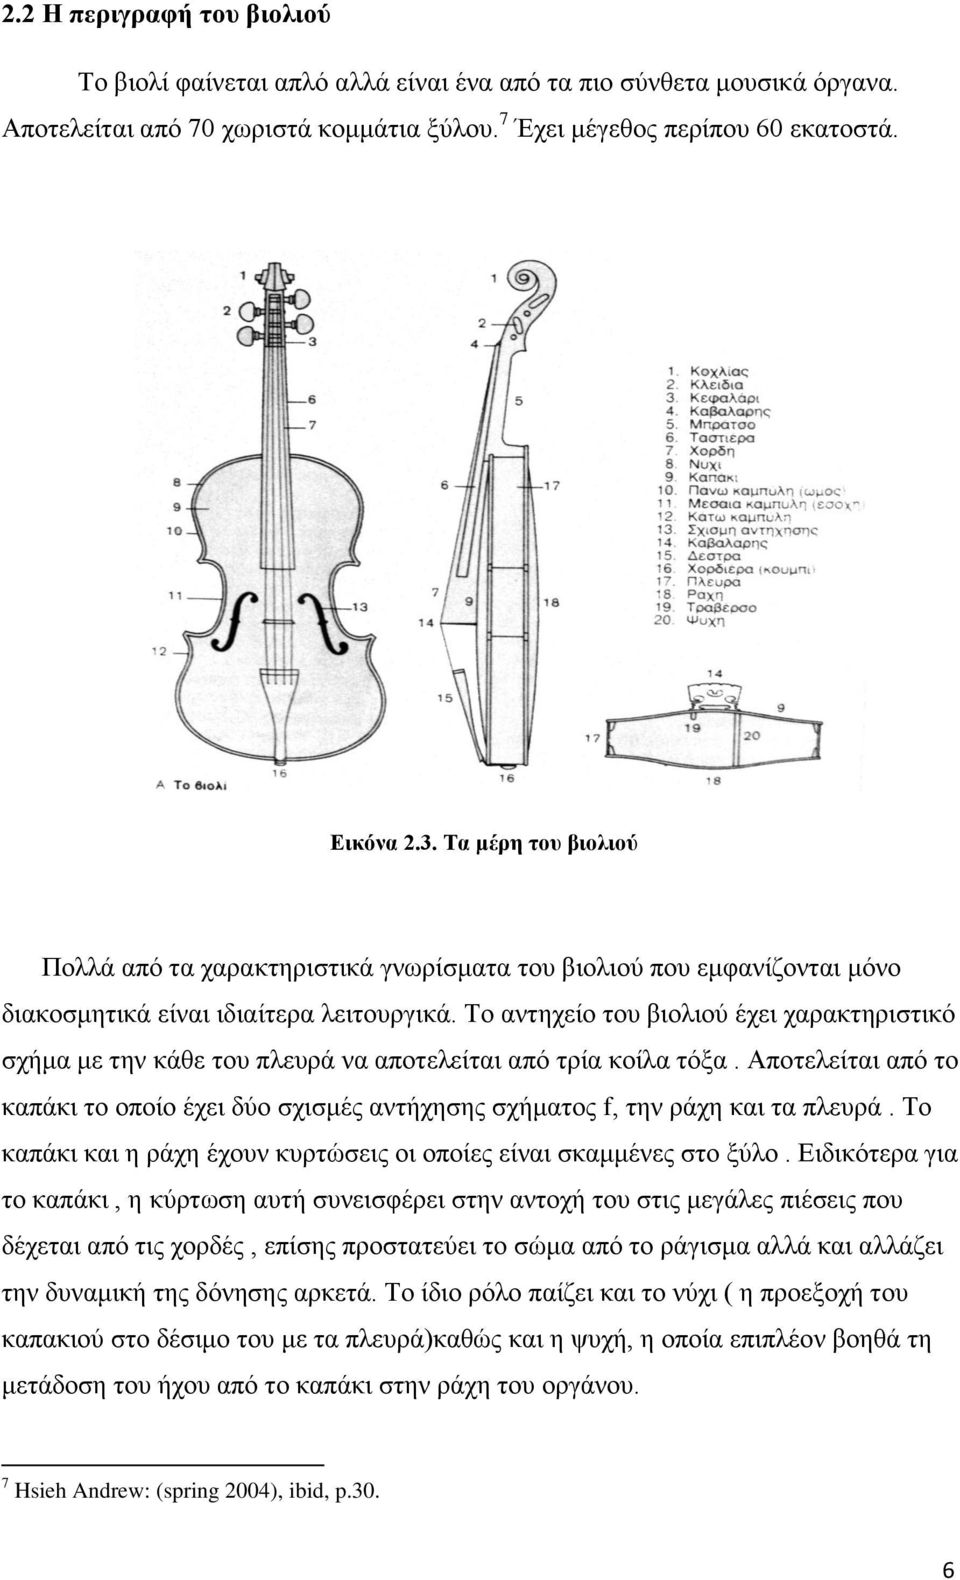 Το αντηχείο του βιολιού έχει χαρακτηριστικό σχήμα με την κάθε του πλευρά να αποτελείται από τρία κοίλα τόξα.